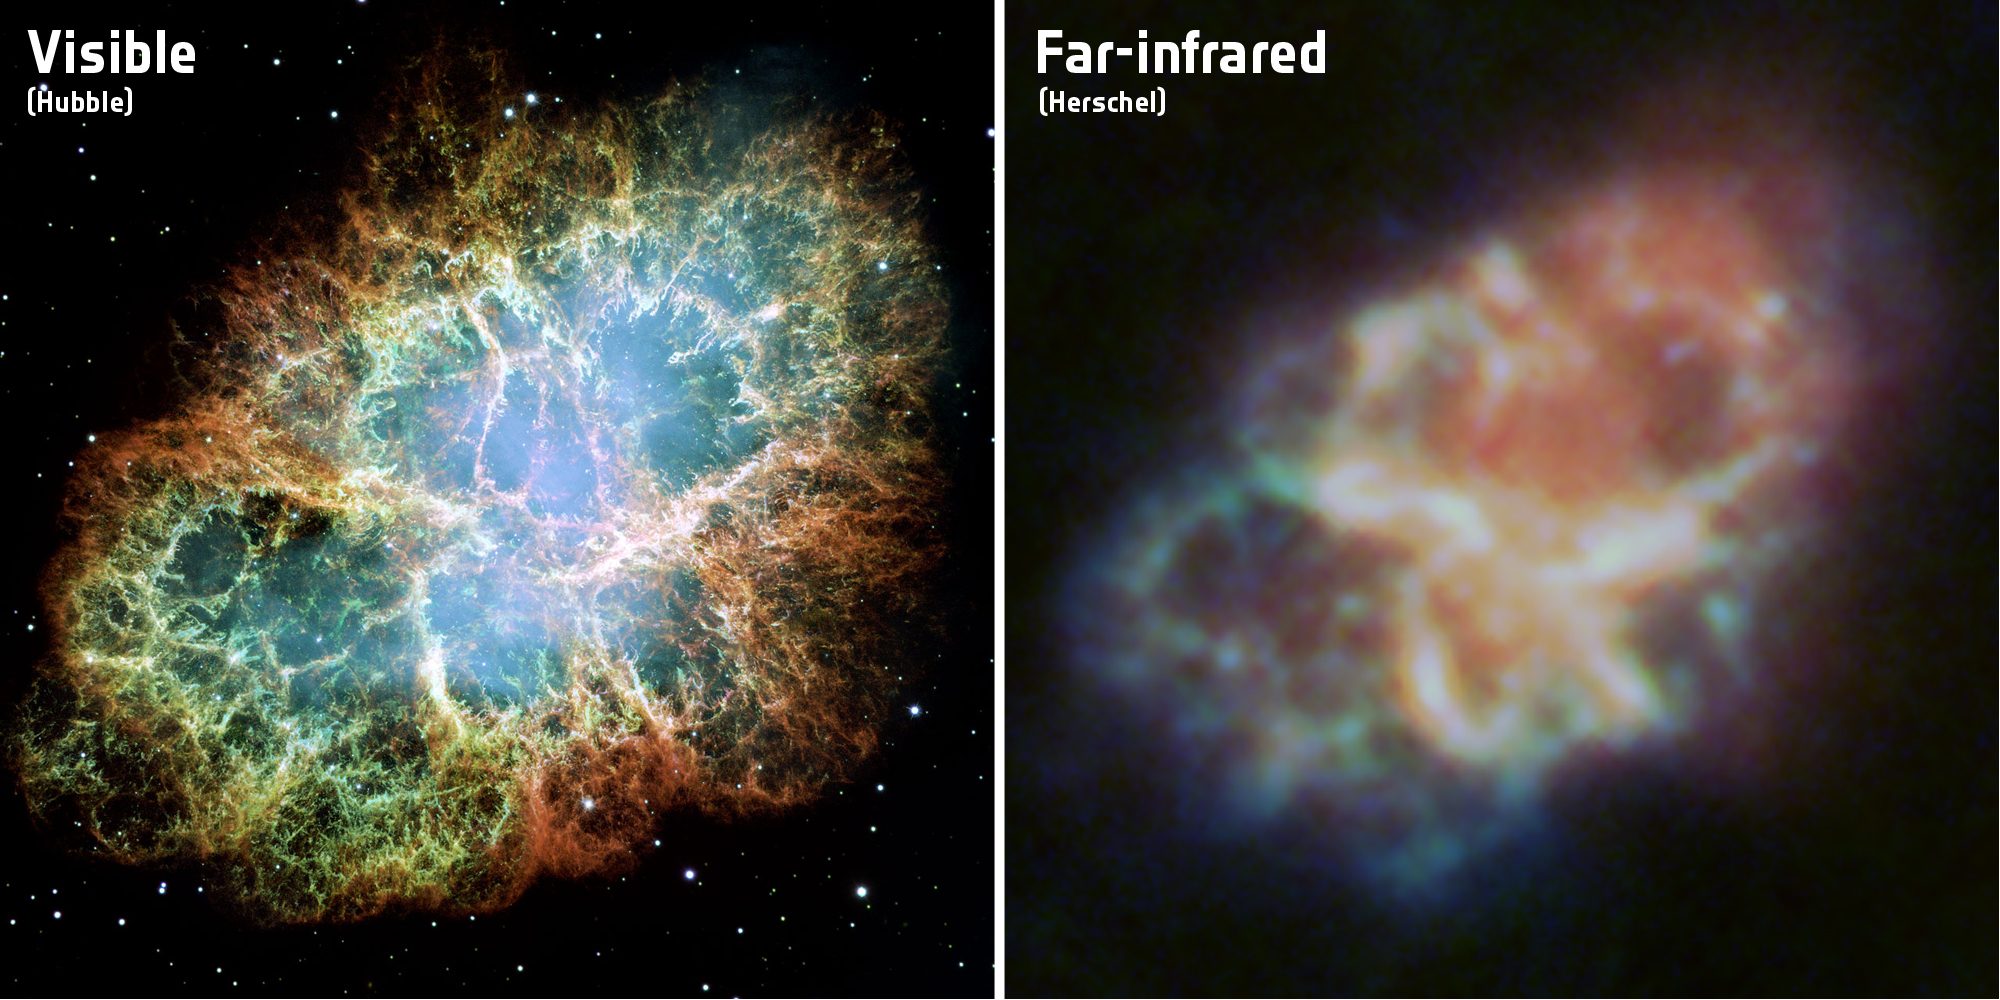 Photographie de la nébuleuse du Crabe gazeuse dans le spectre visible (à gauche) prise par le télescope Hubble et dans le spectre infrarouge (à droite) fourni par l'observatoire Herschel.